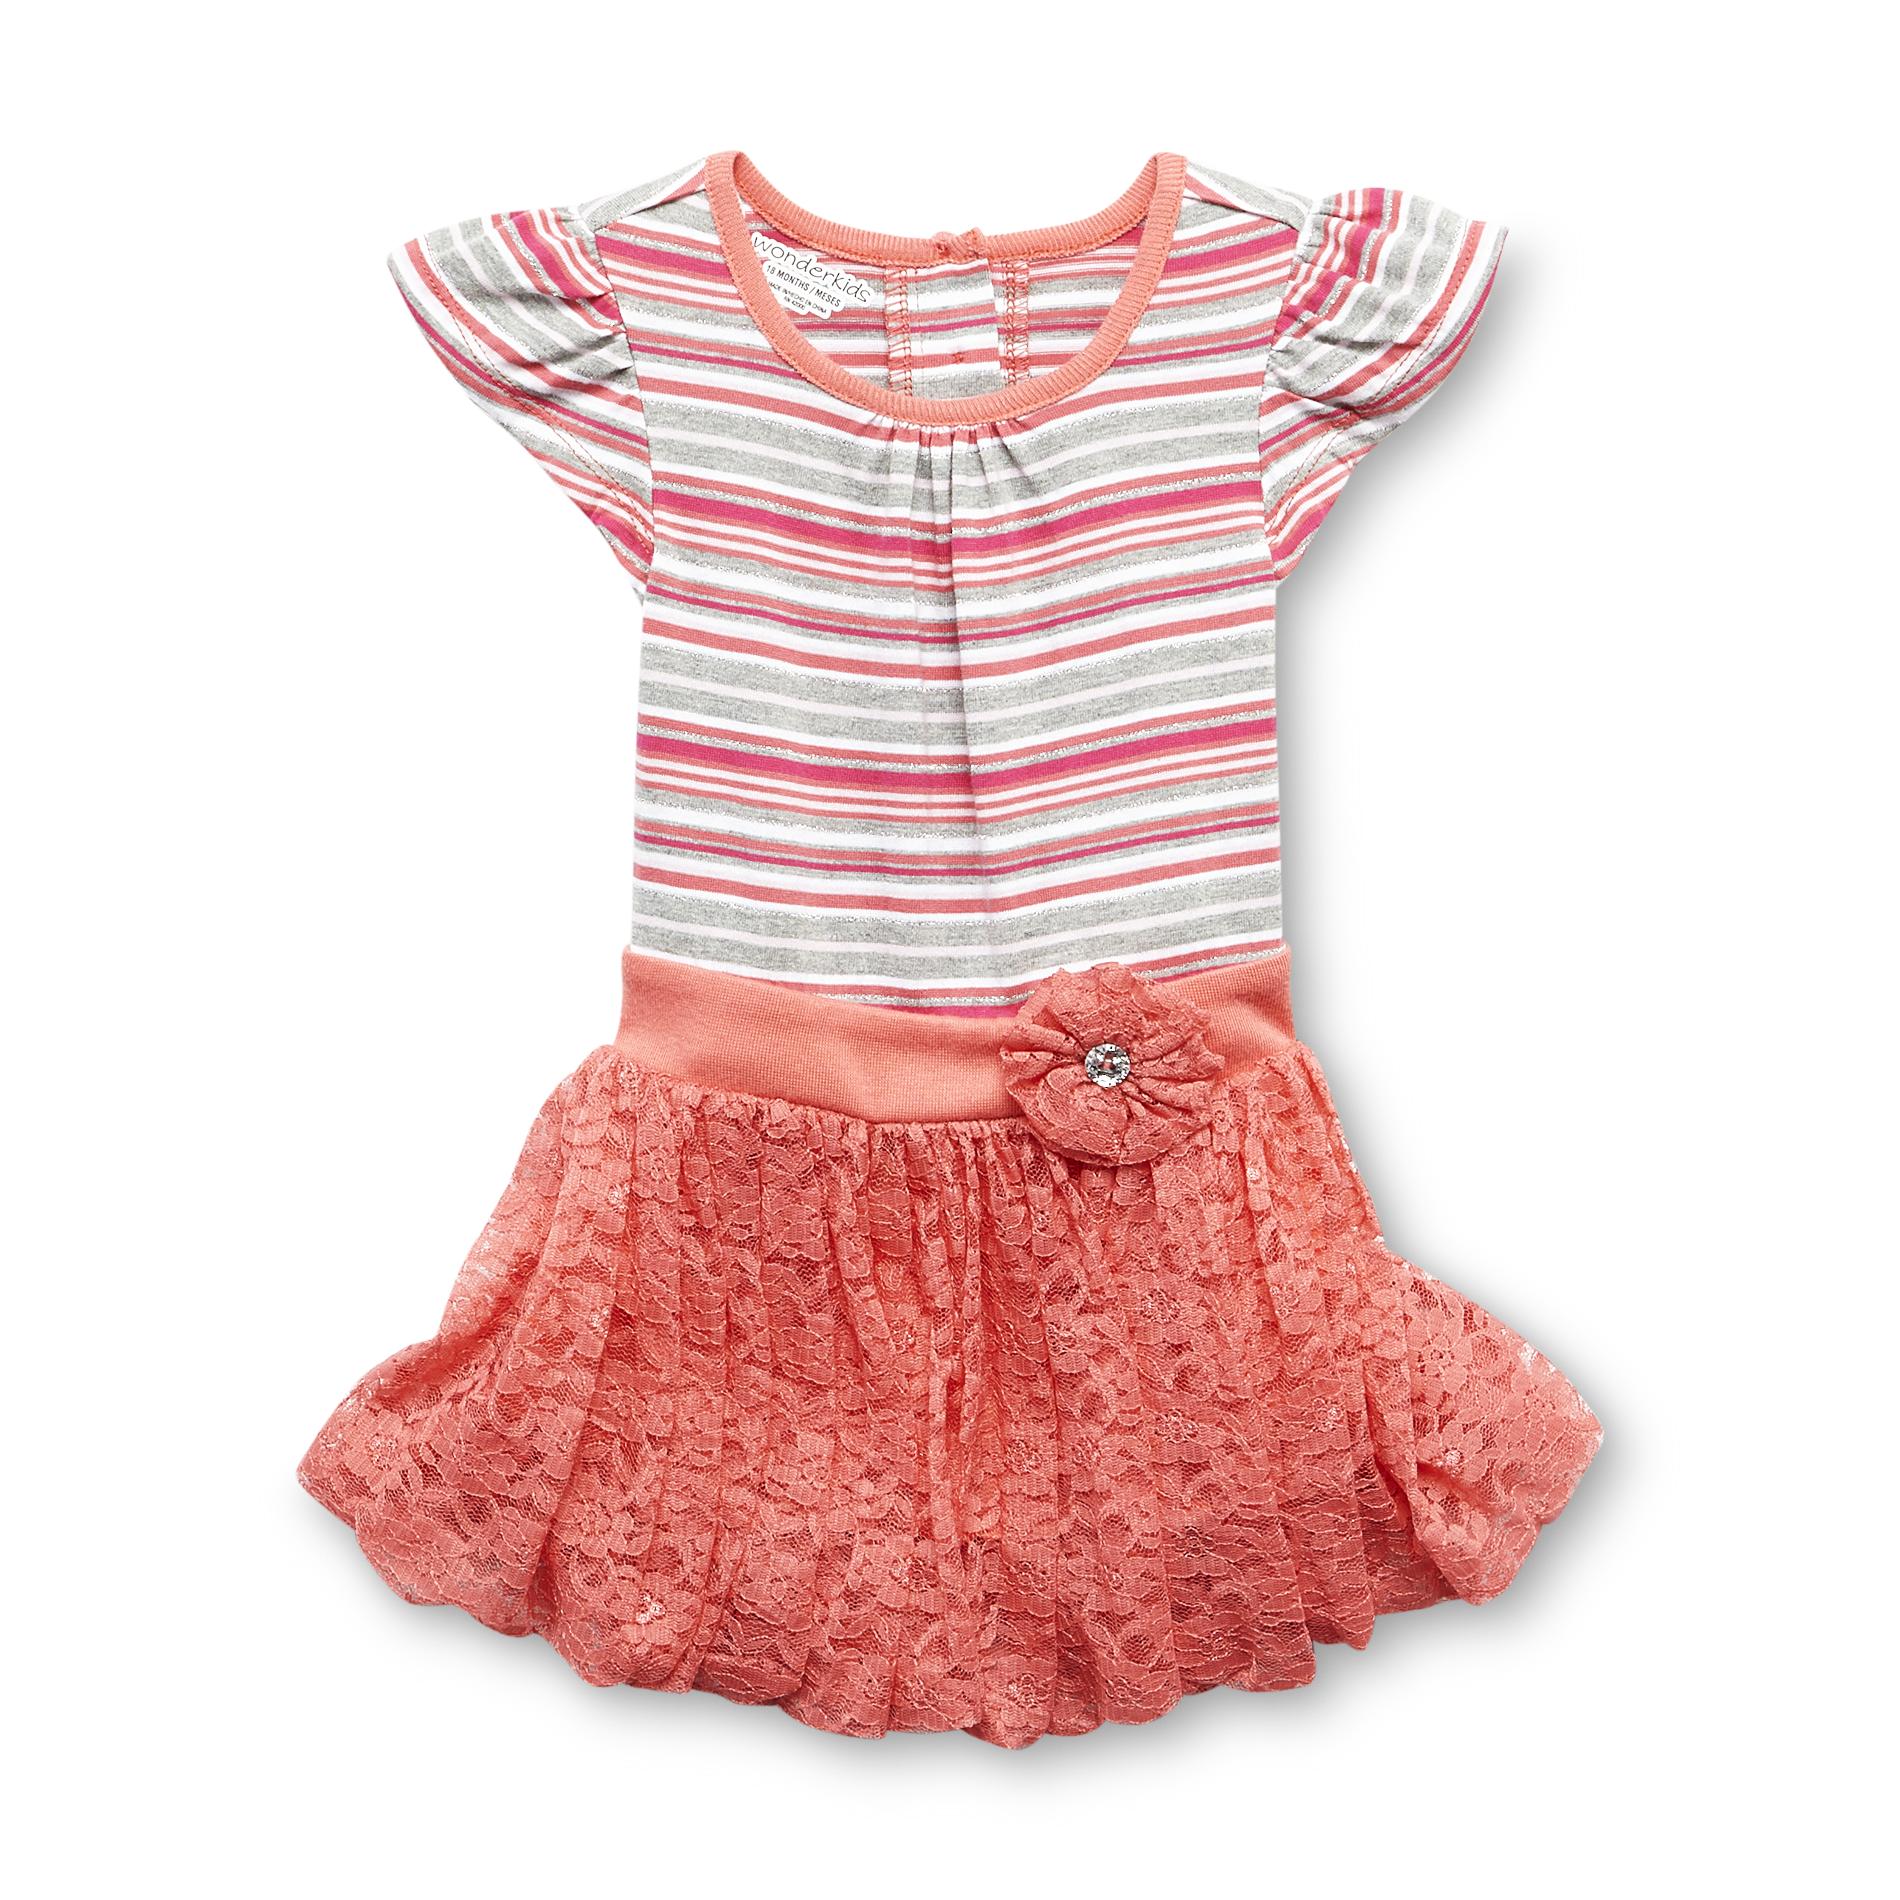 Infant & Toddler Girl's Flutter-Sleeve Dress - Striped & Lace